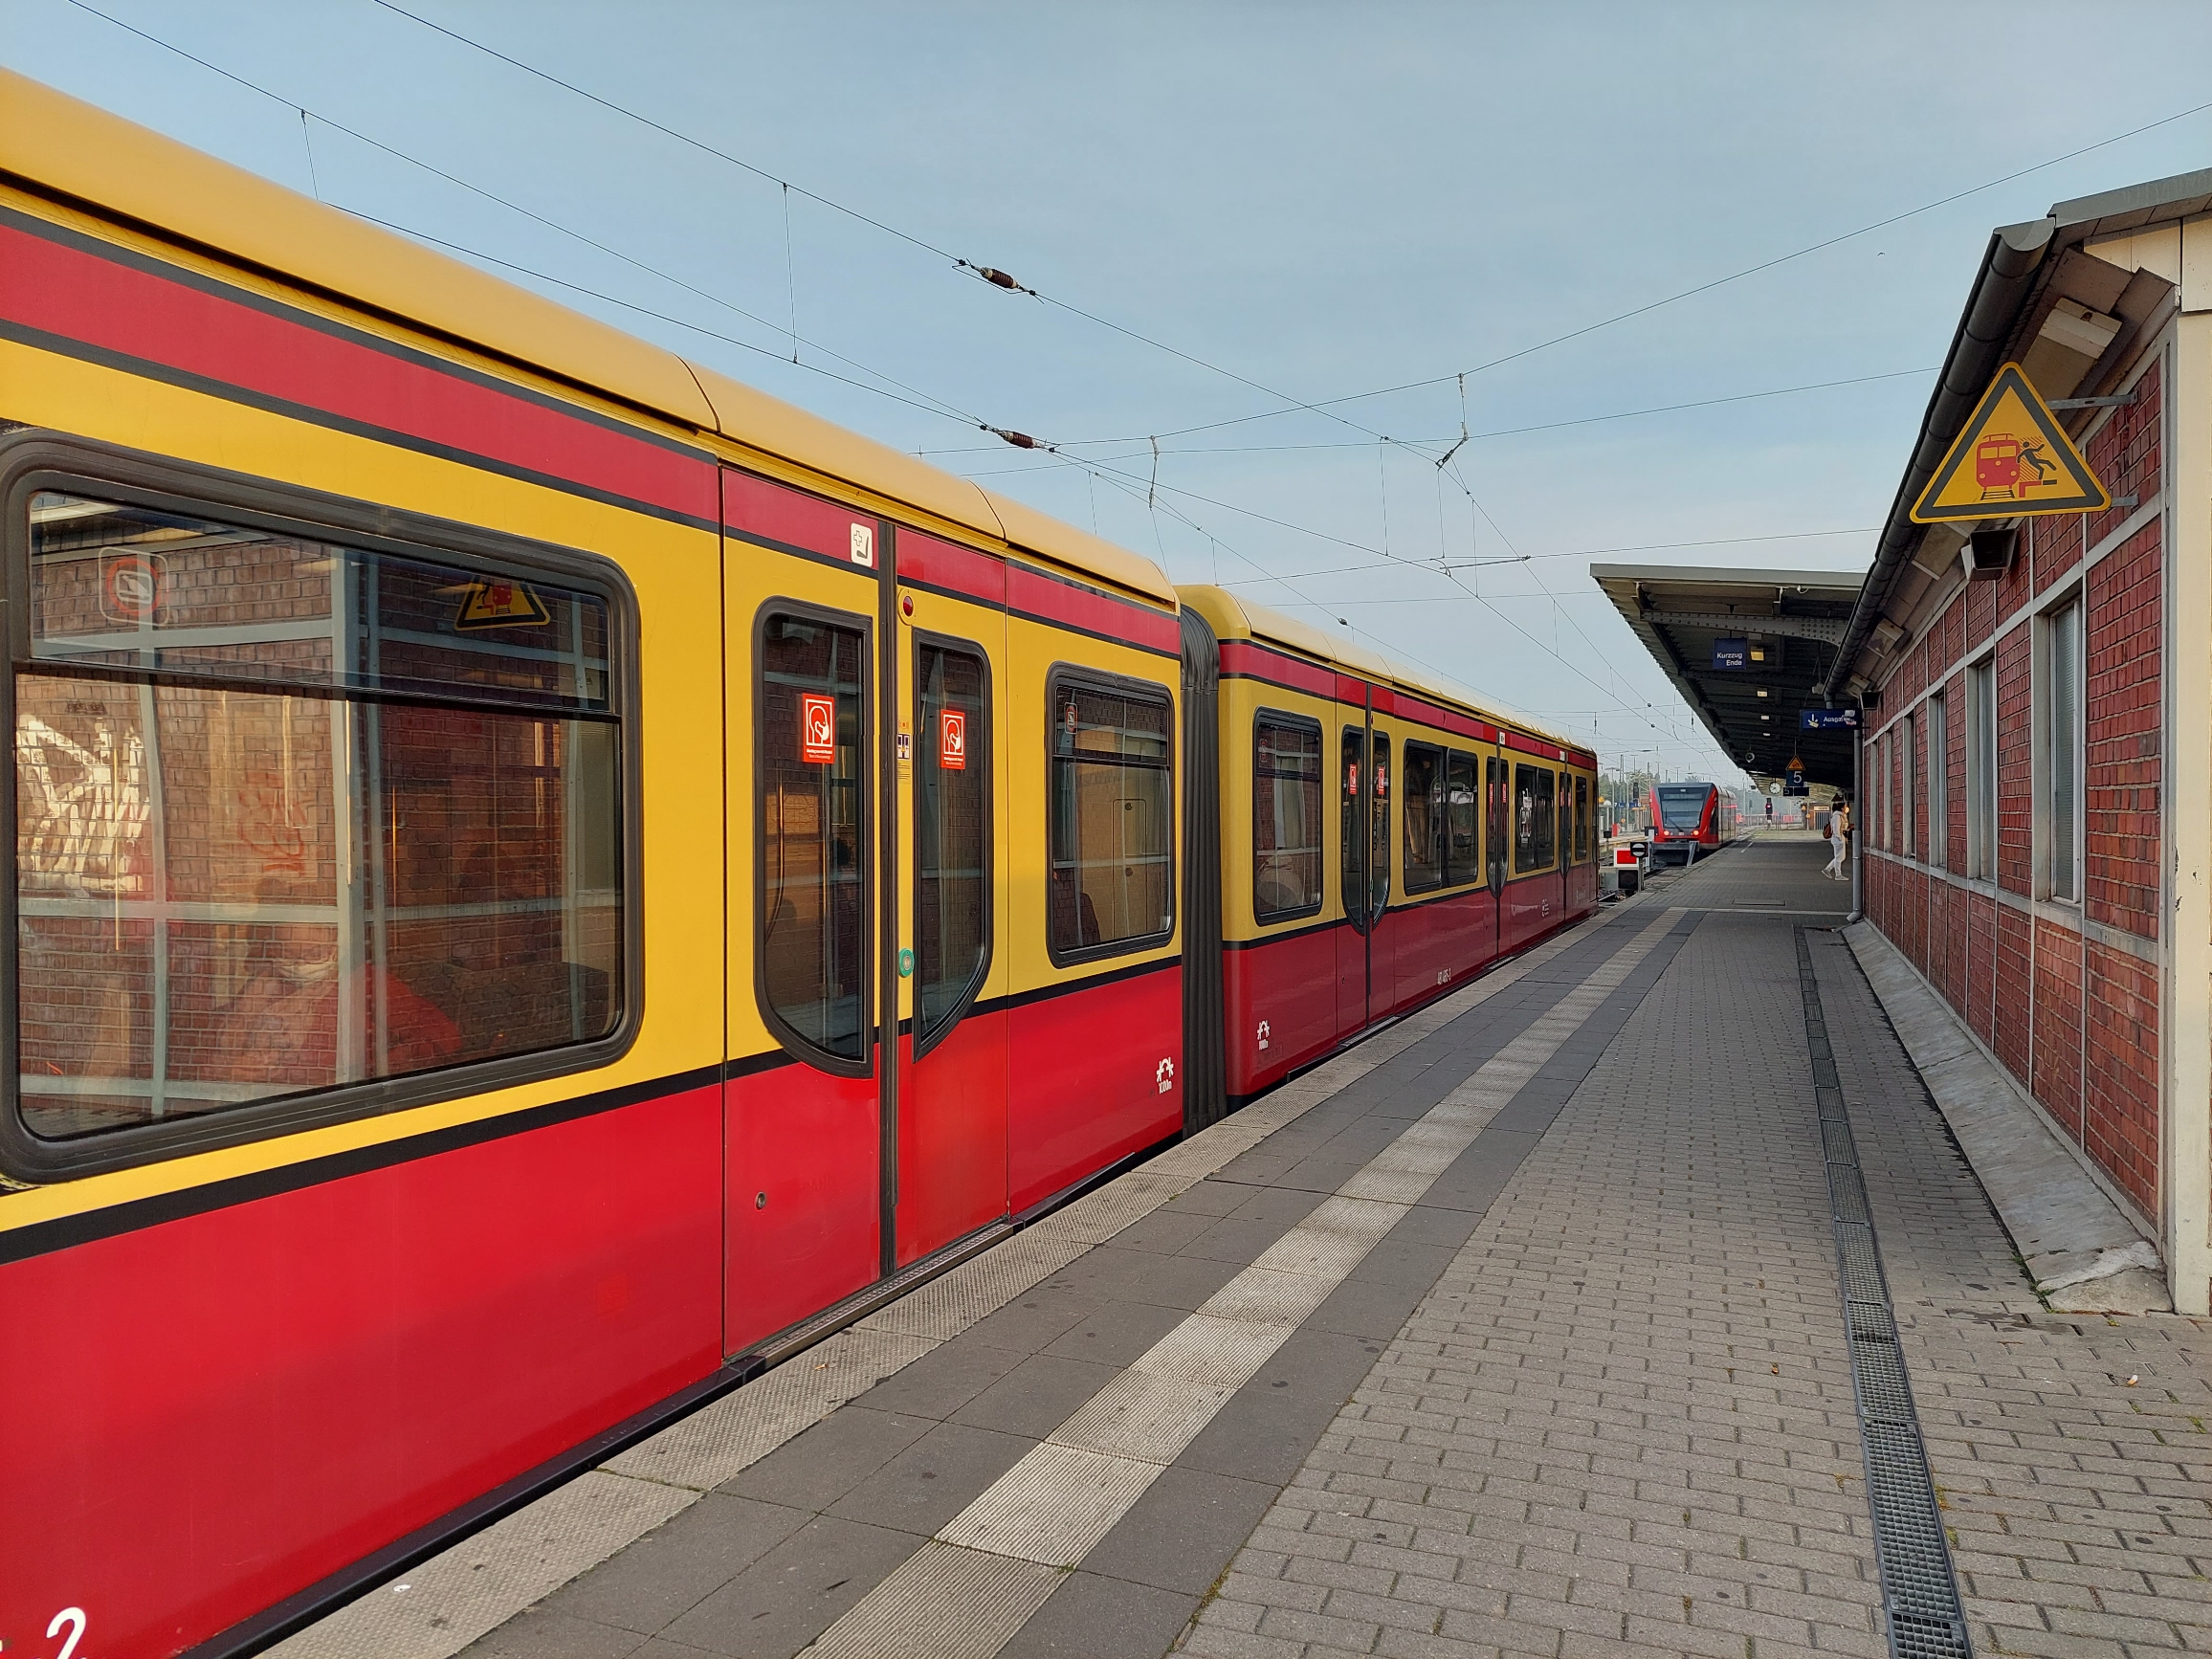 Planung für besseren S-Bahn-Takt beginnt